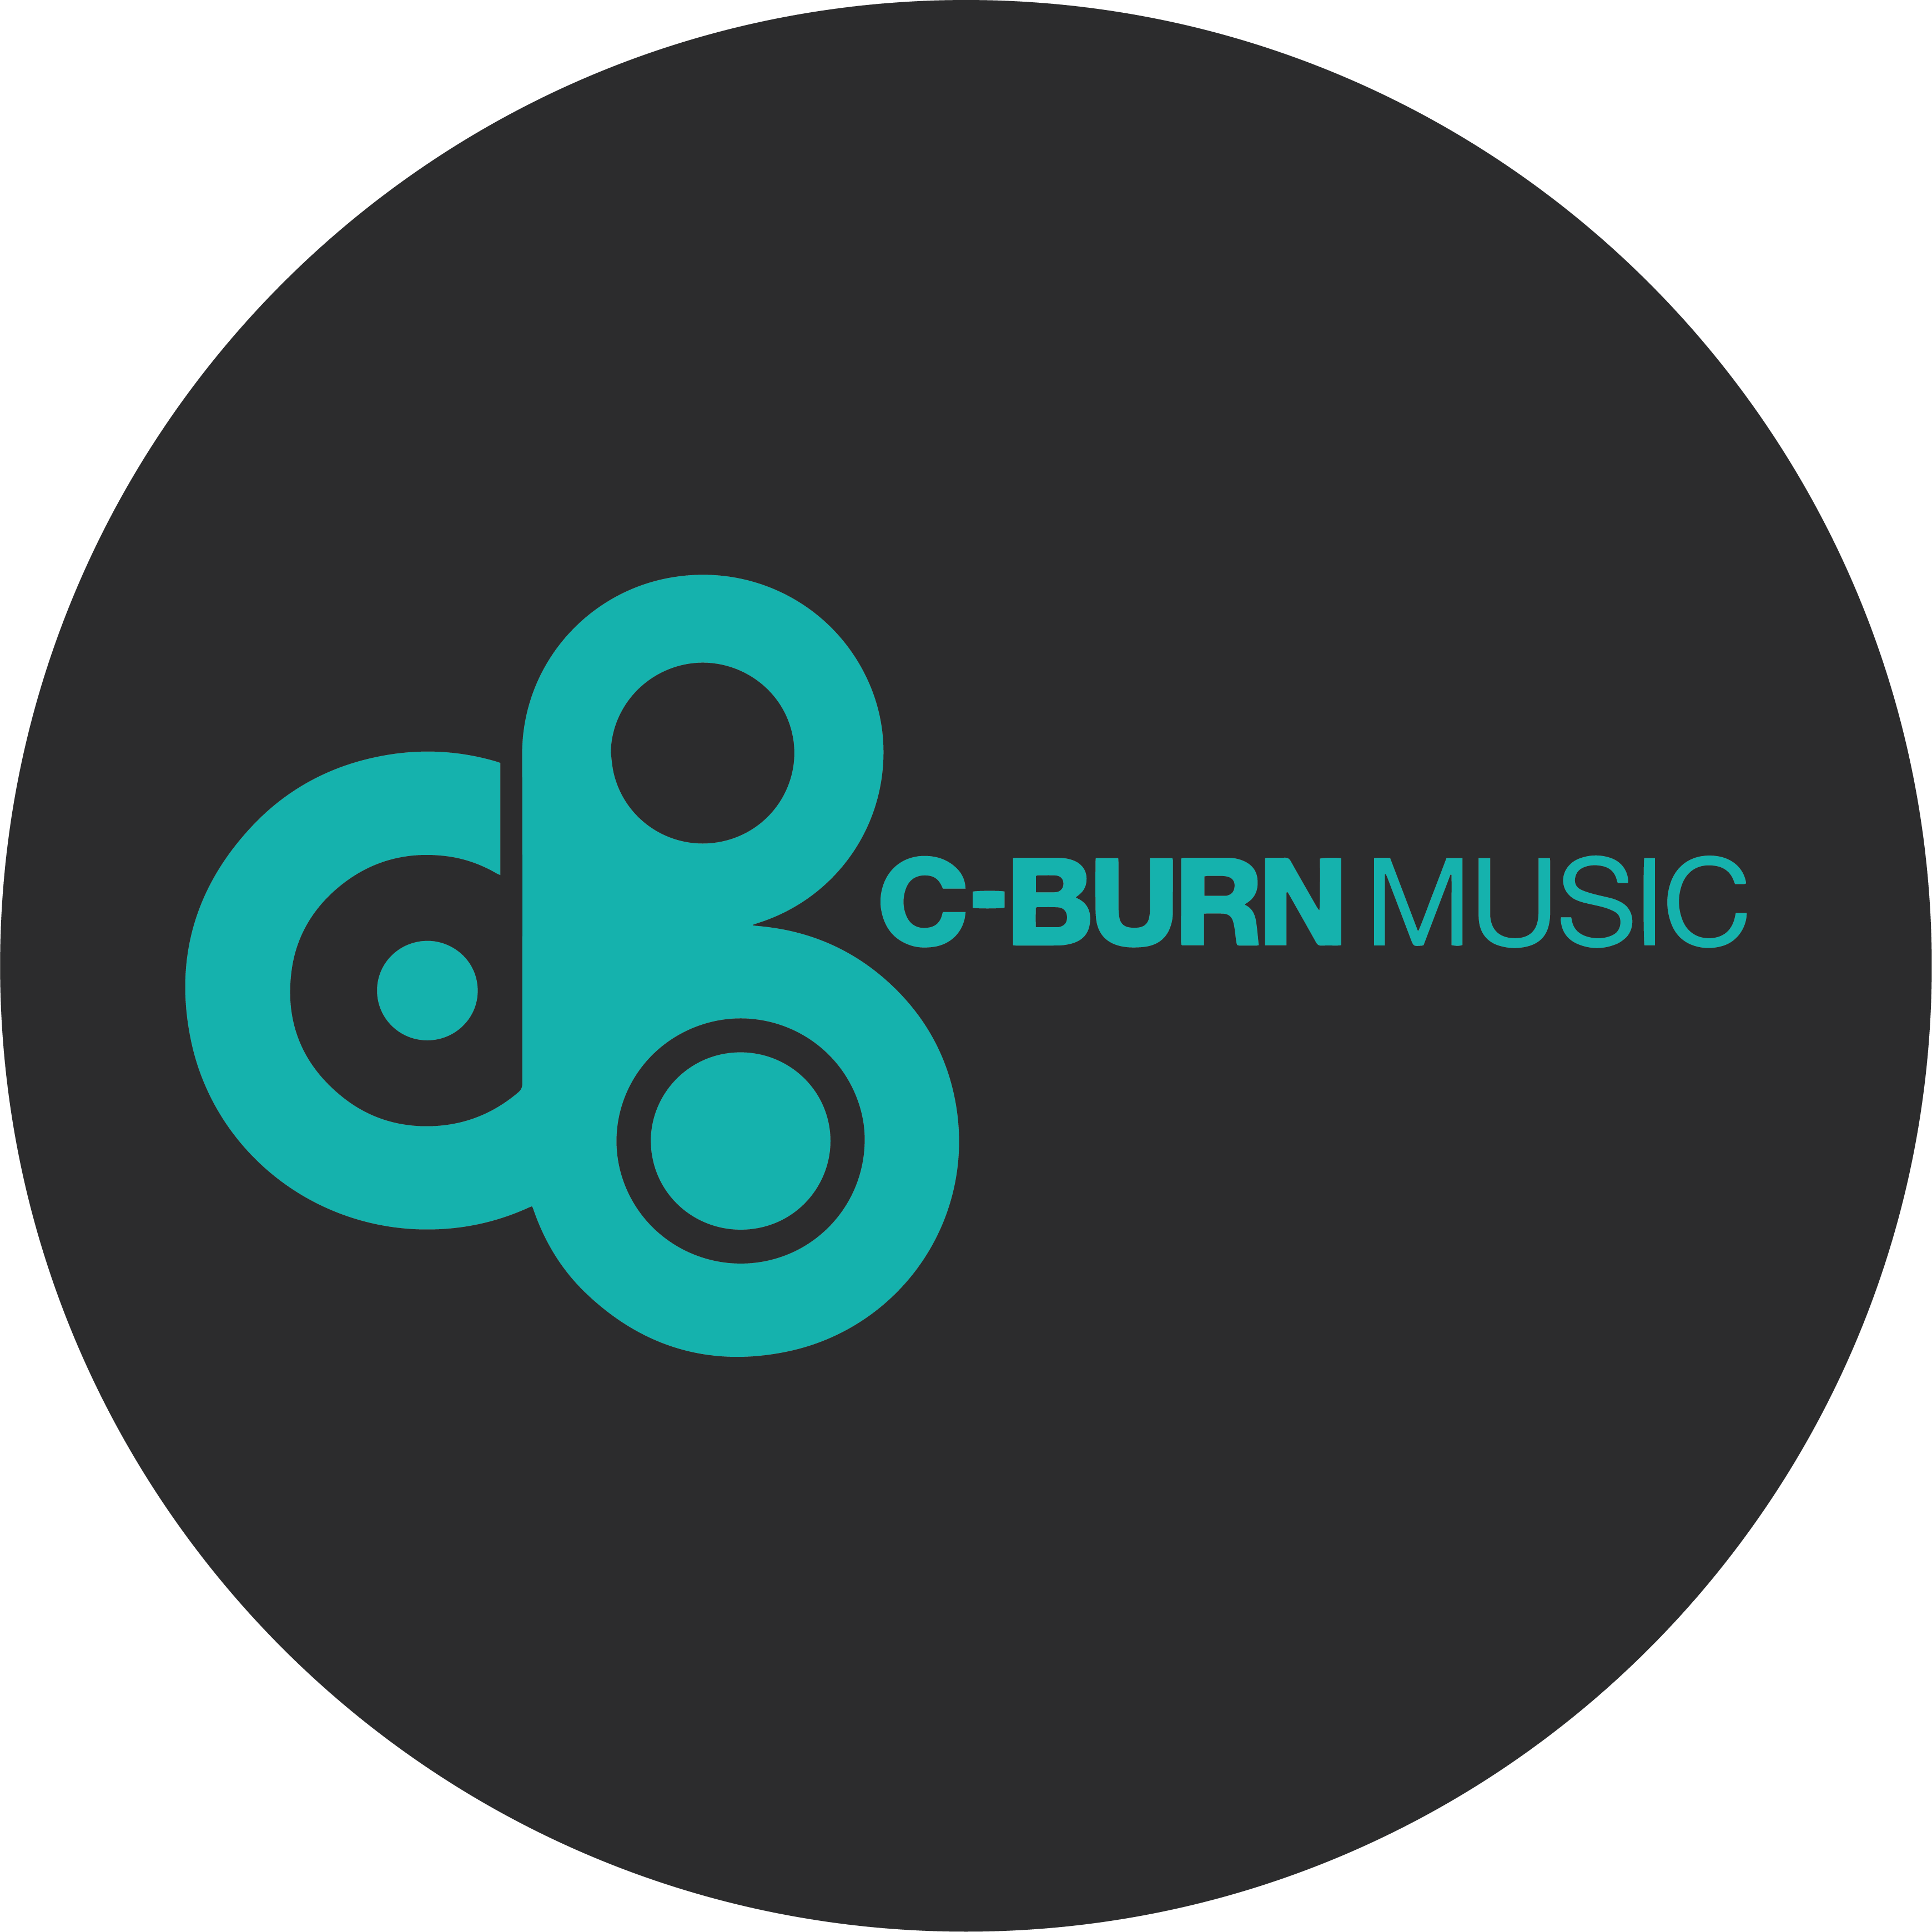 C-BURN MUSIC